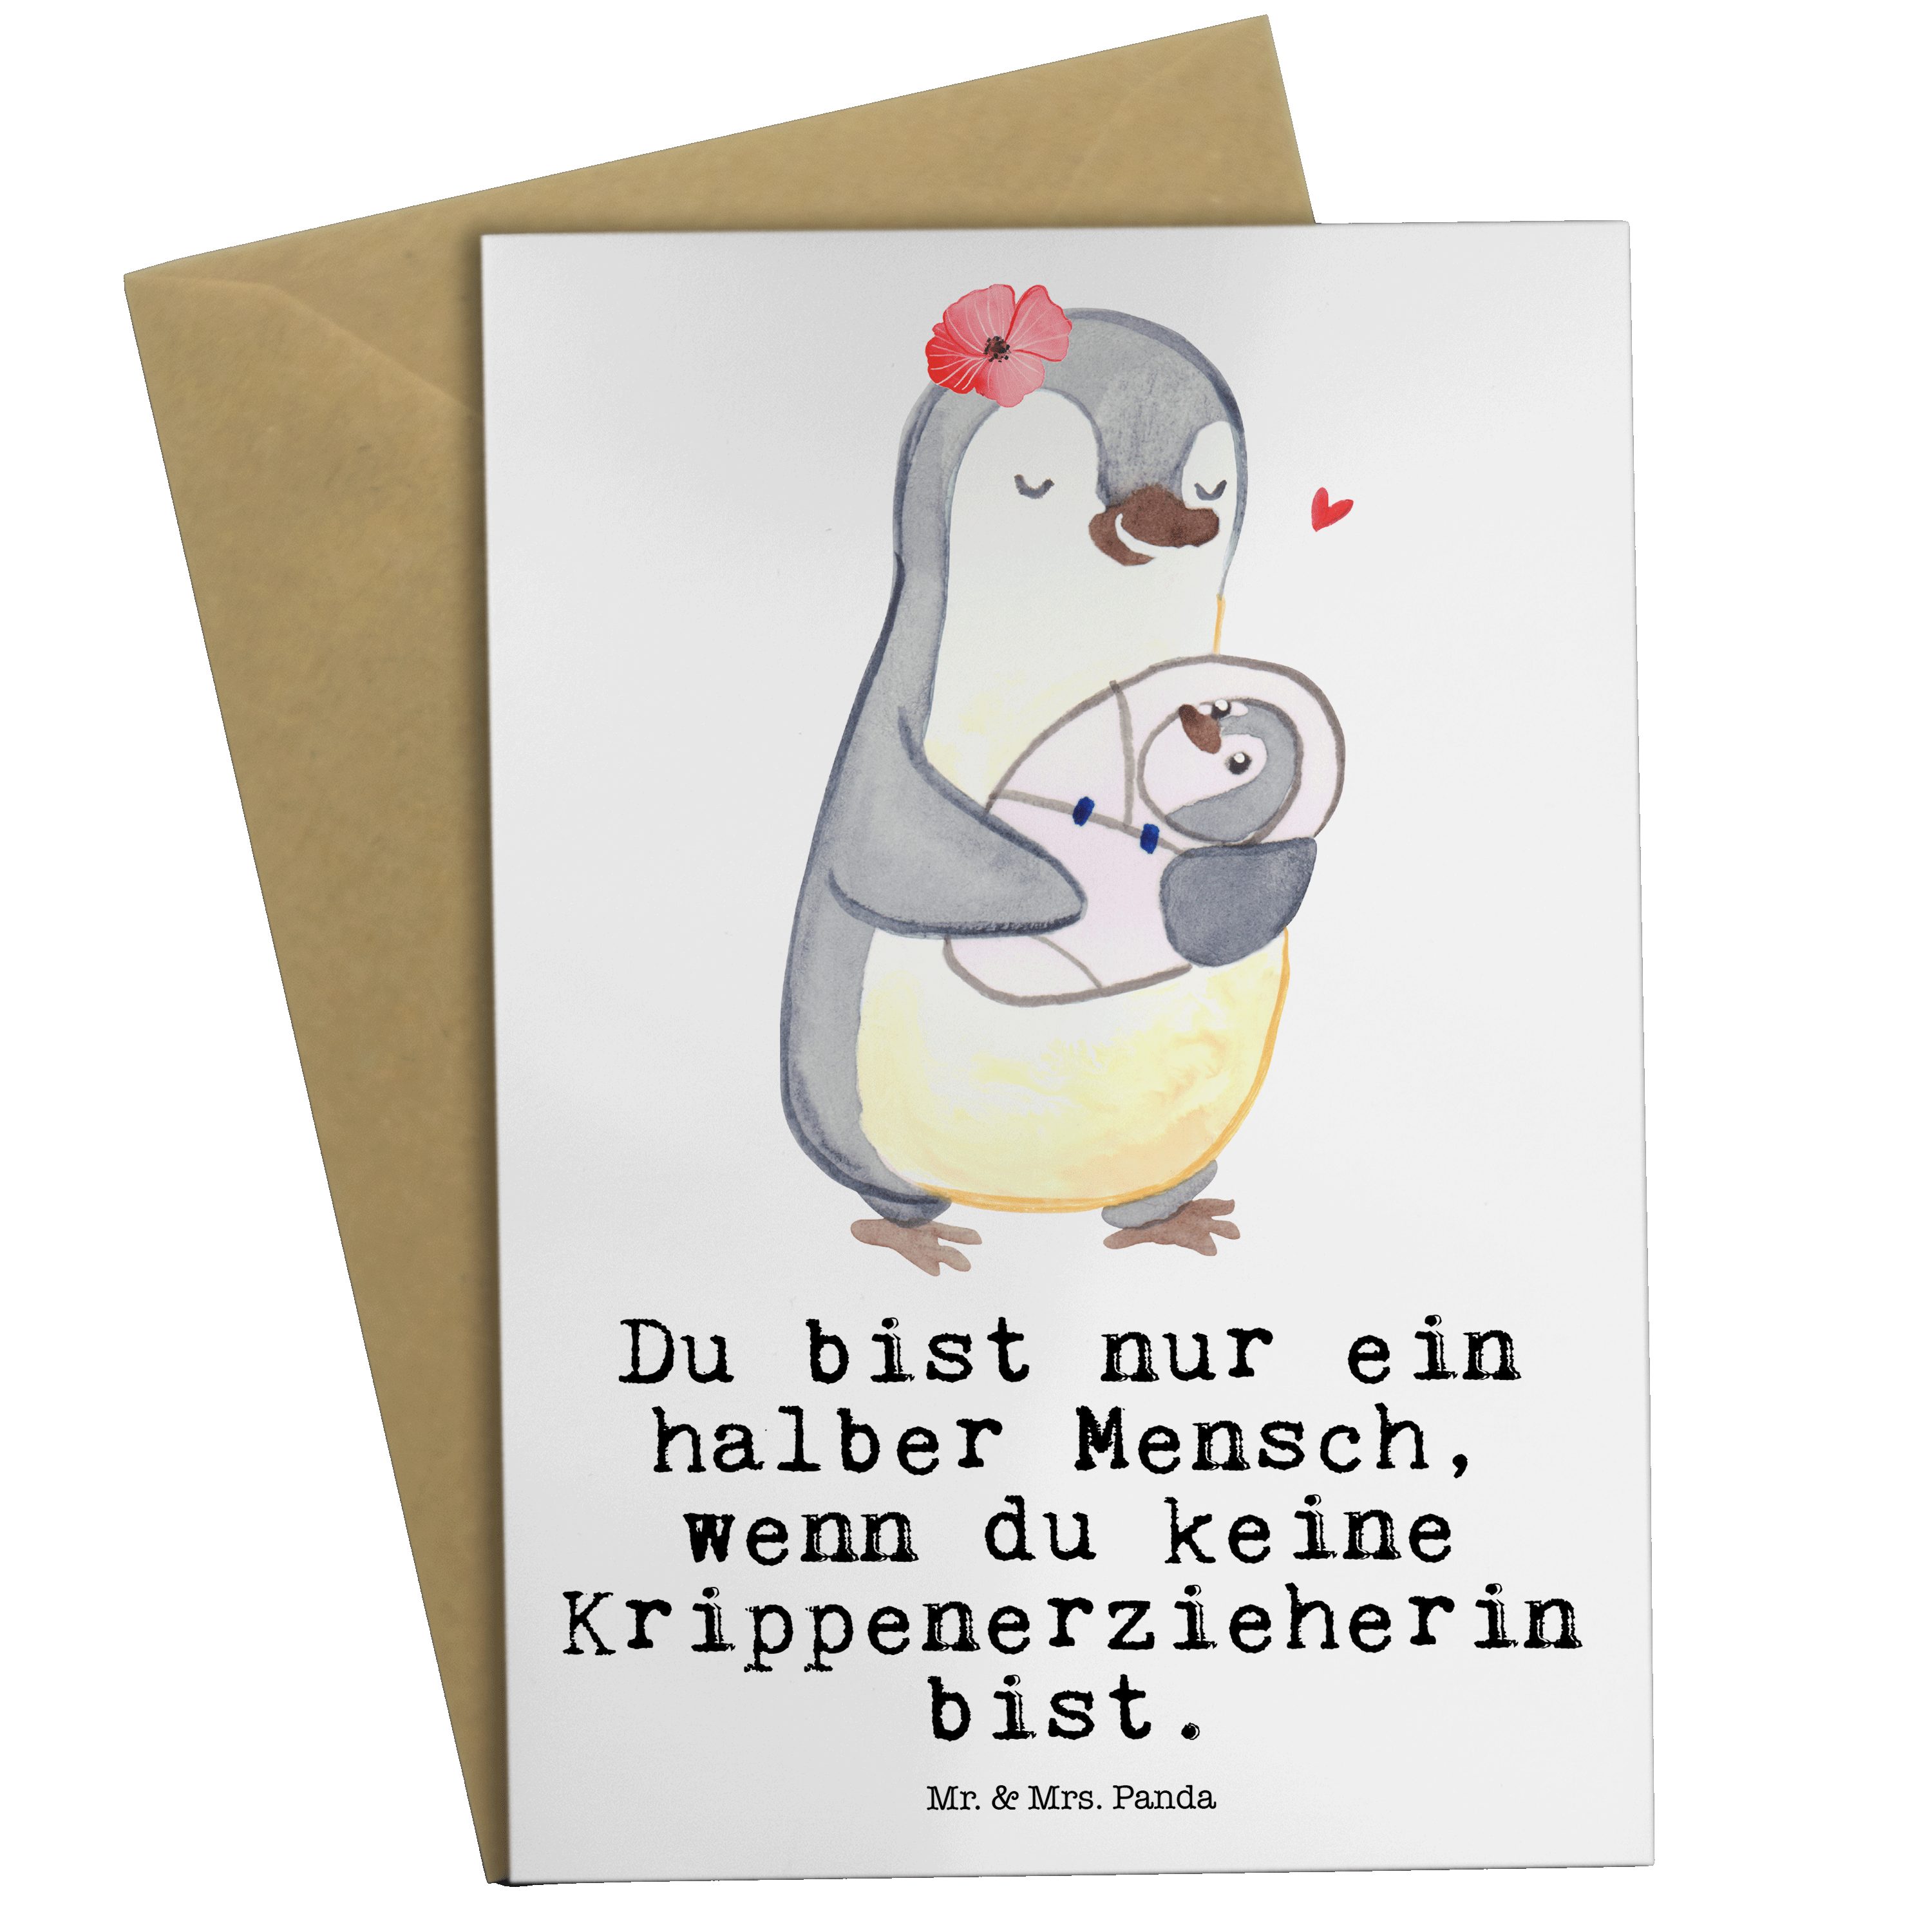 Mr. & Mrs. Panda Grußkarte Krippenerzieherin mit Herz - Weiß - Geschenk, Pädagogin, Rente, KITA